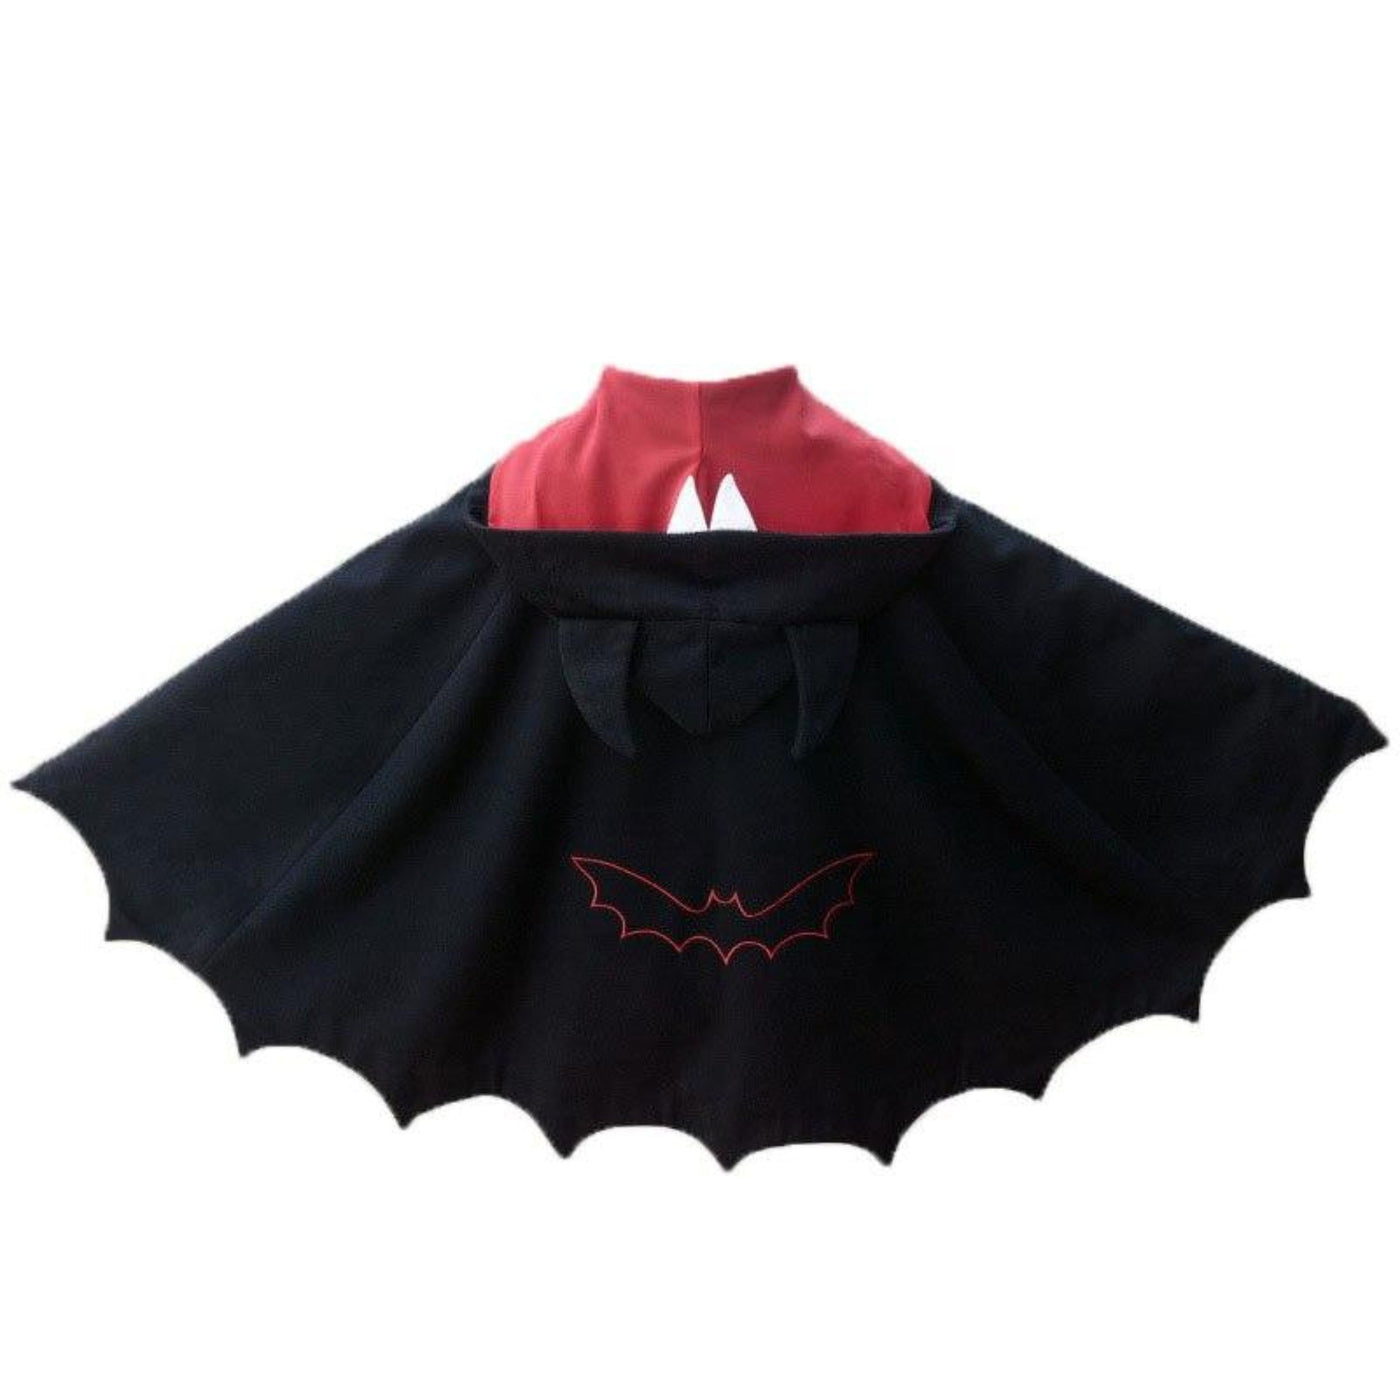 The Batwing Hoodie